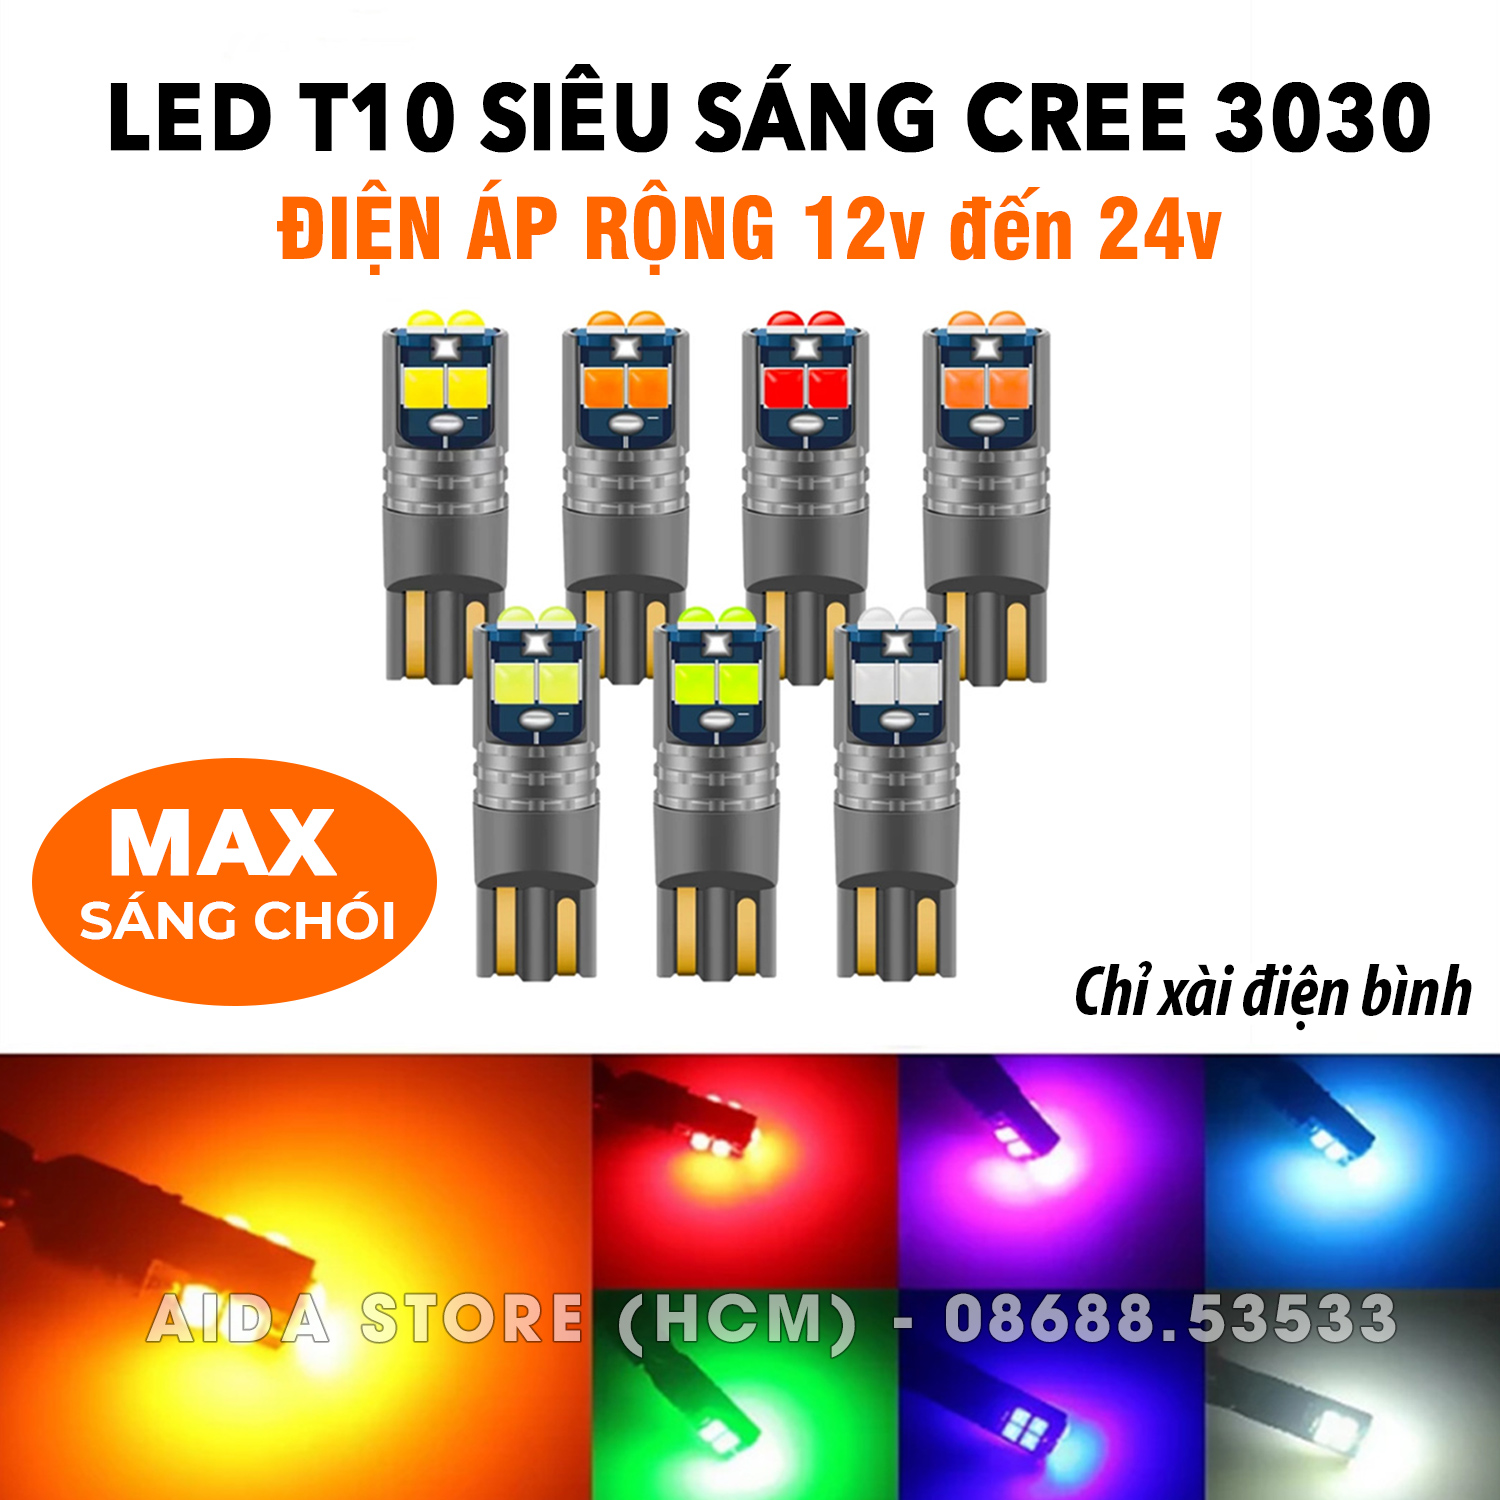 [6XIN] Bóng LED T10 6CREE 3030 max sáng điện áp dải rộng DC12v đến 24v lắp demi, xi nhan